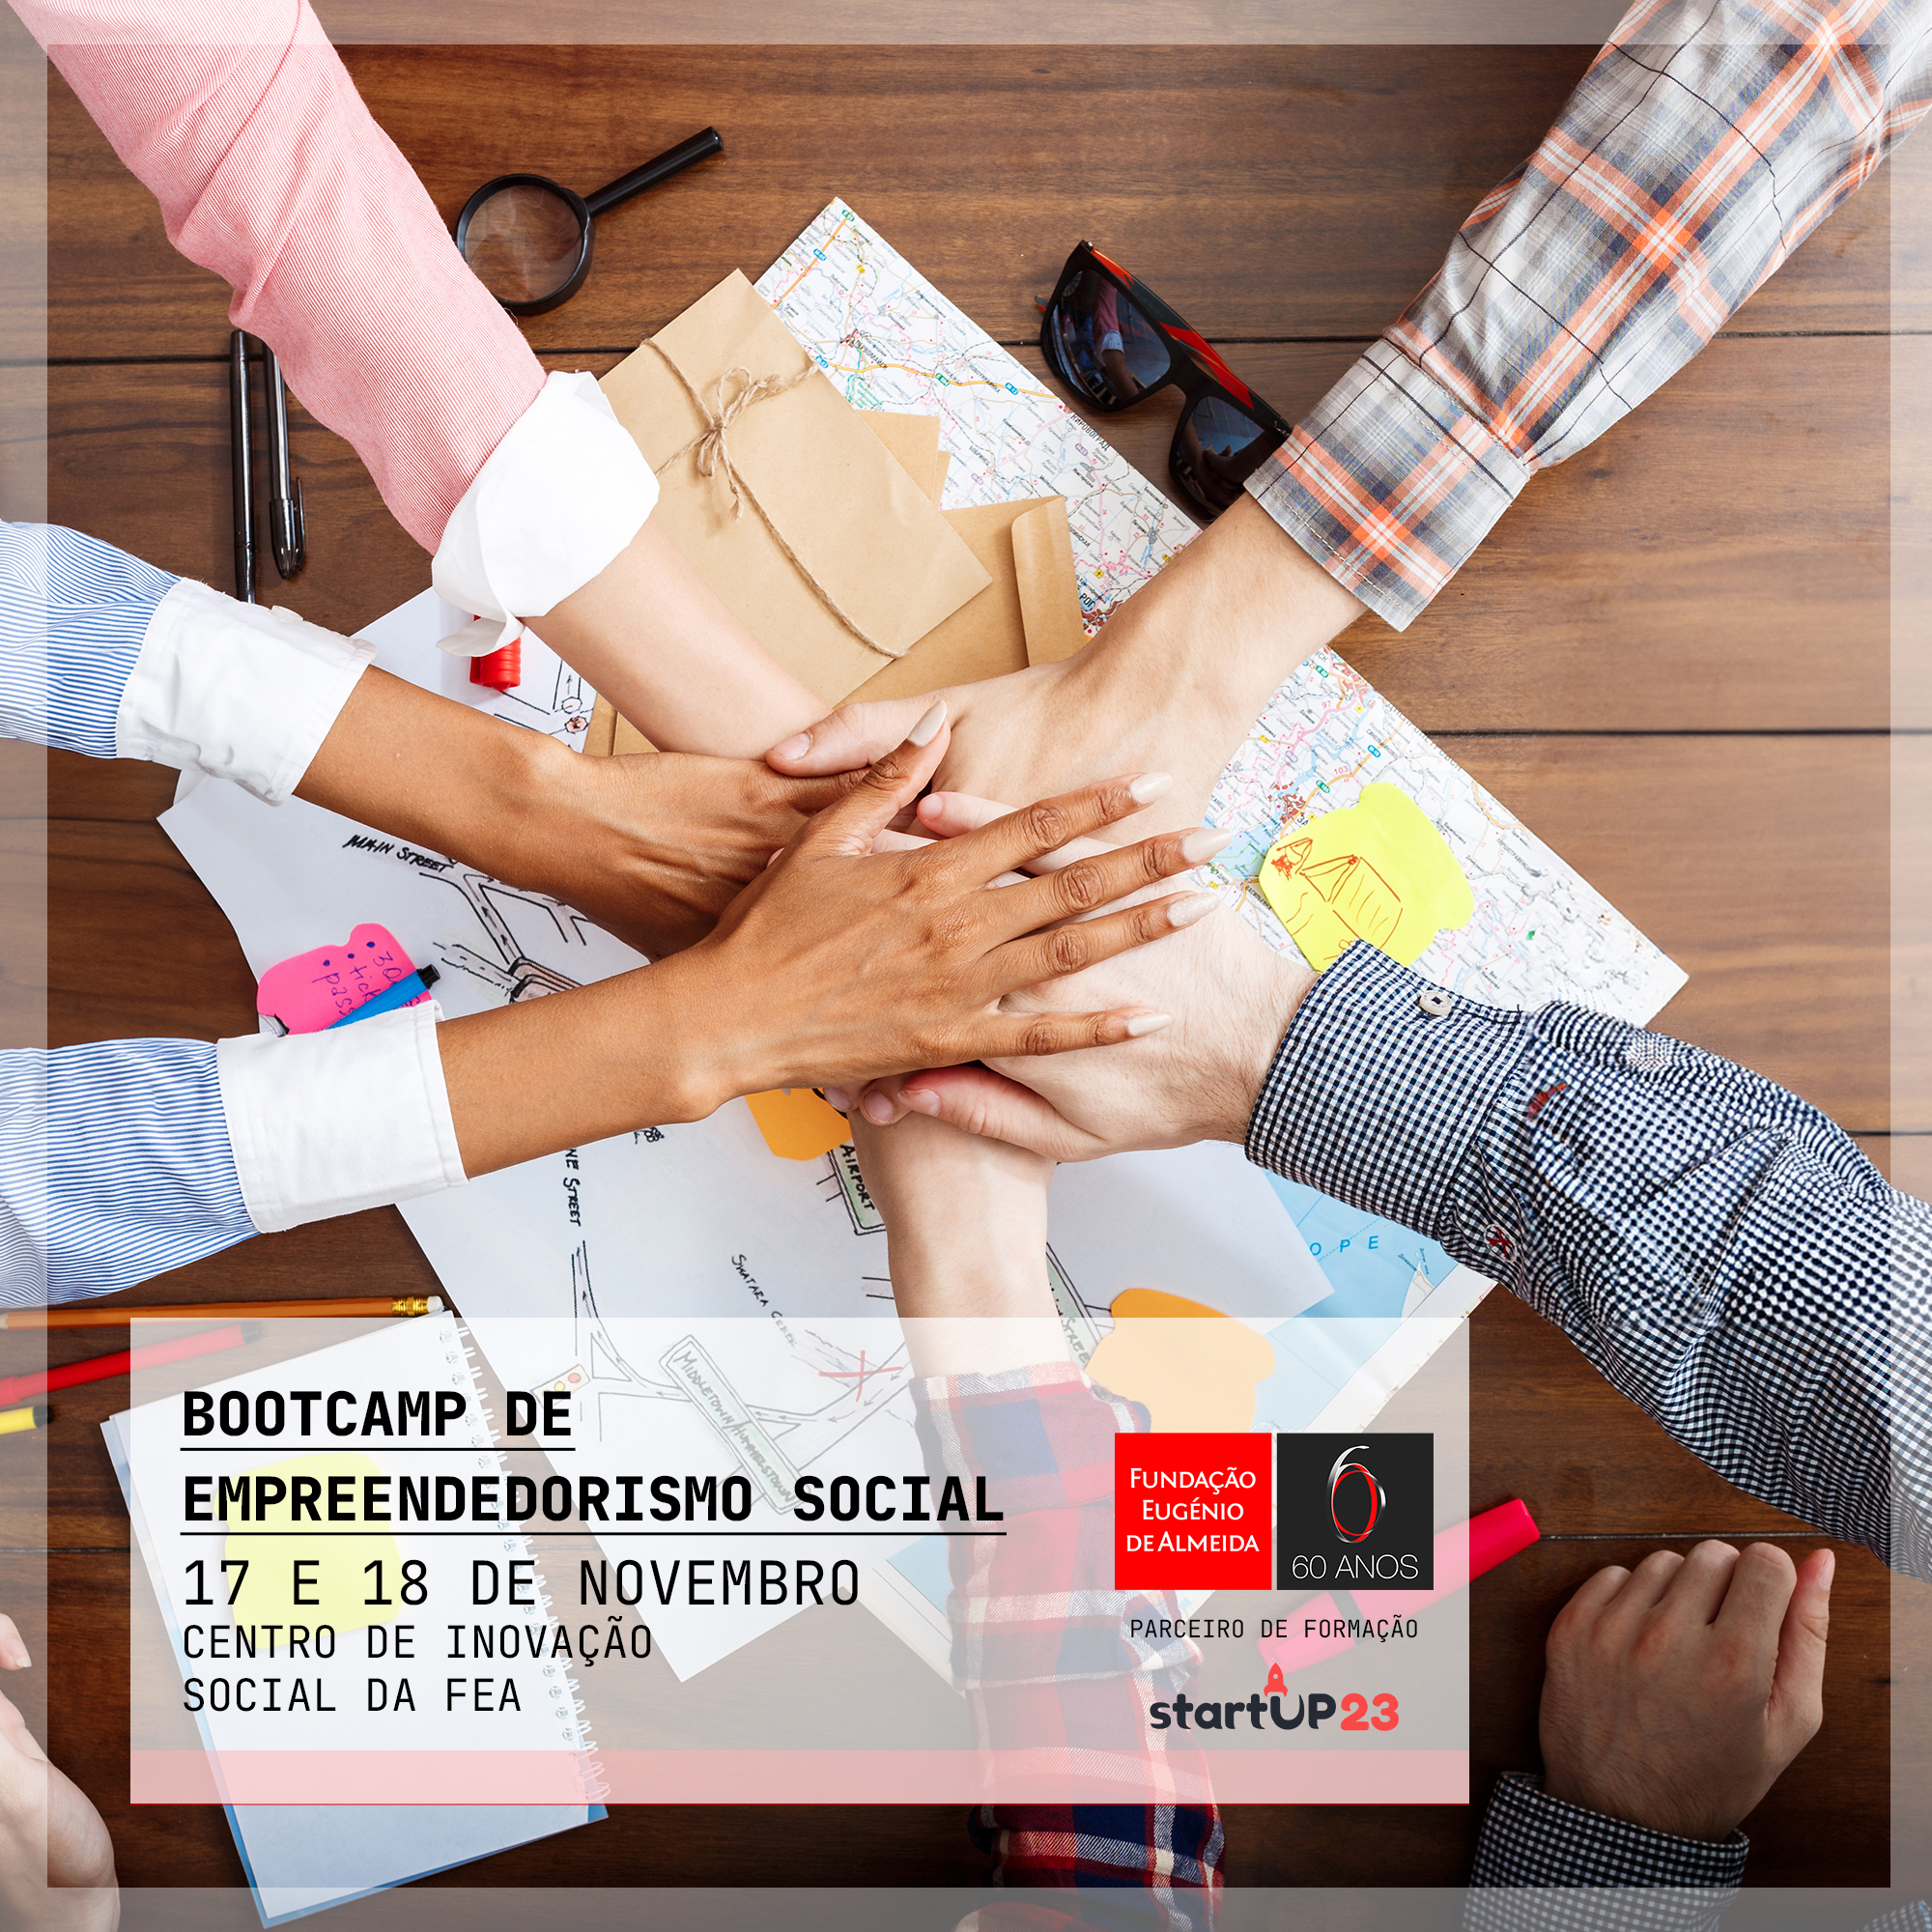 Bootcamp em Empreendedorismo Social